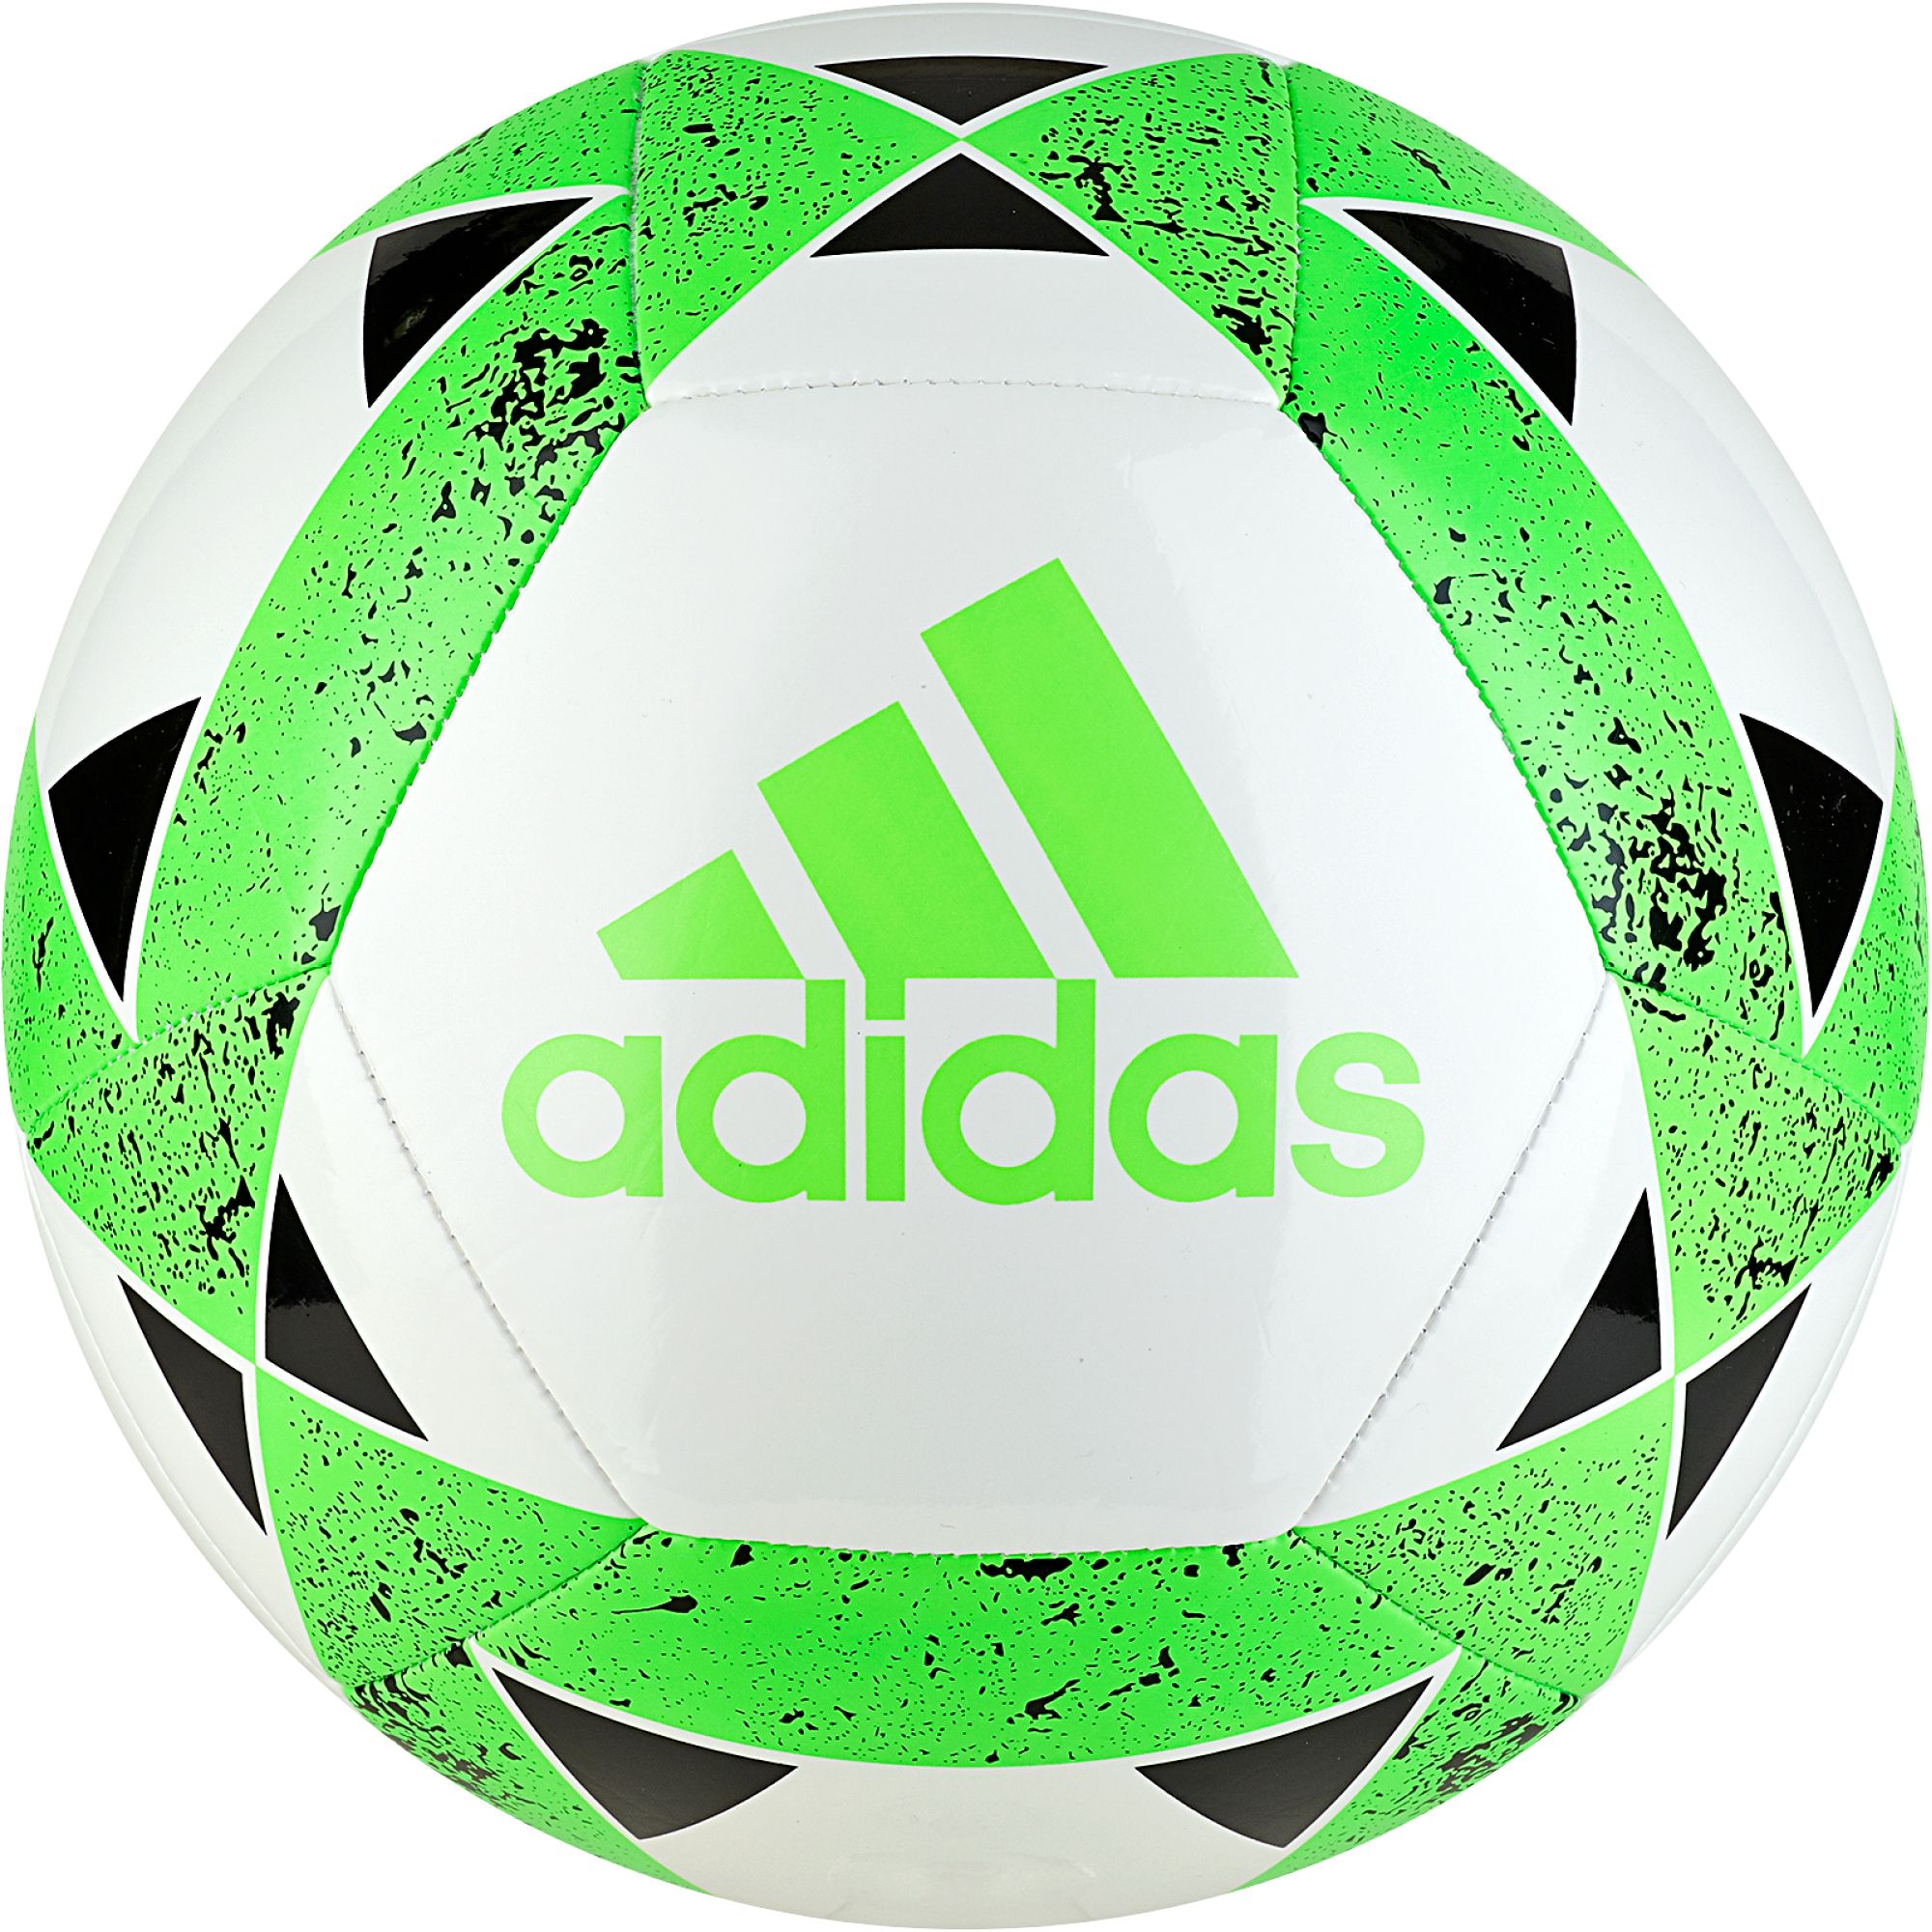 adidas starlancer v soccer ball